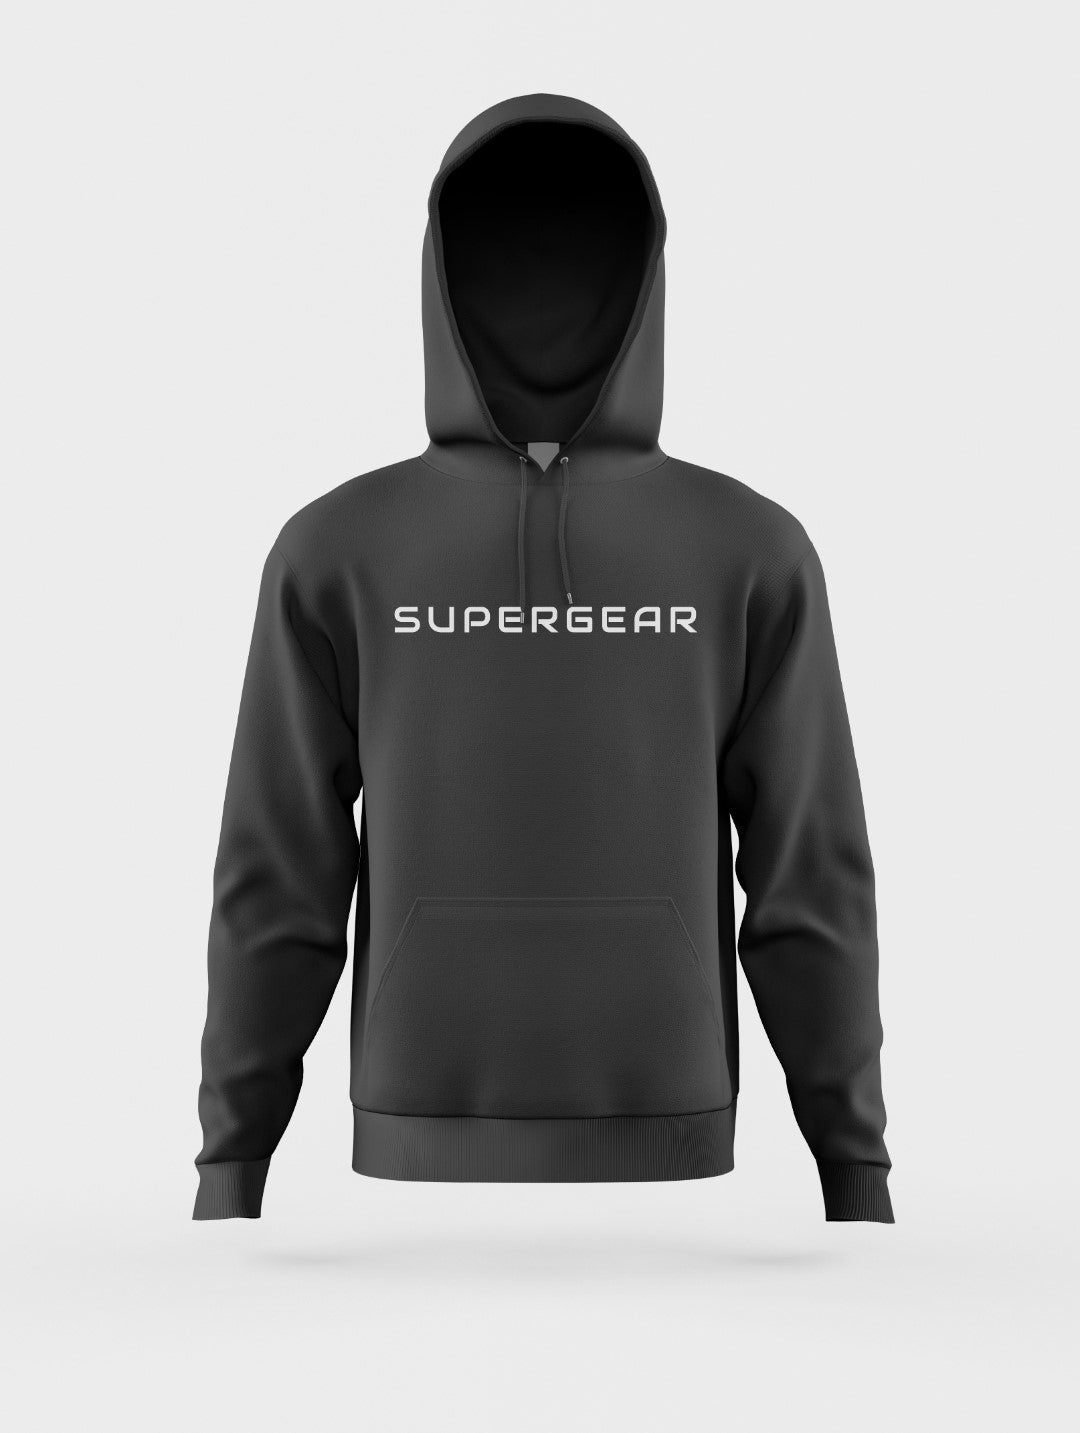 SuperGear hoodie